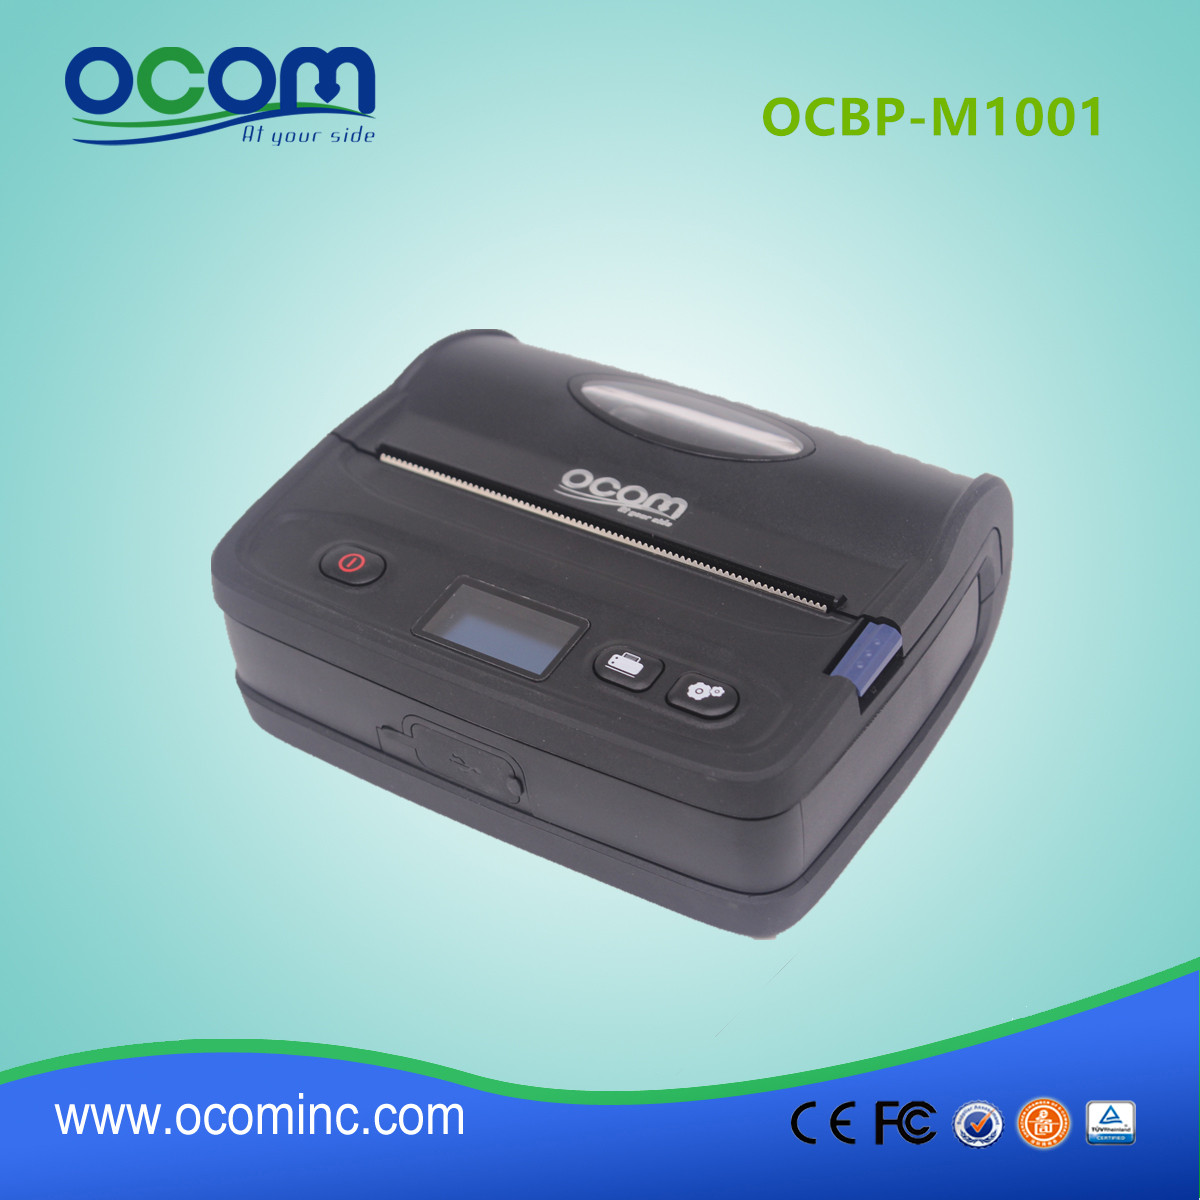 OCBP-M1001 adesivo termico stampante barcode label per adesivi